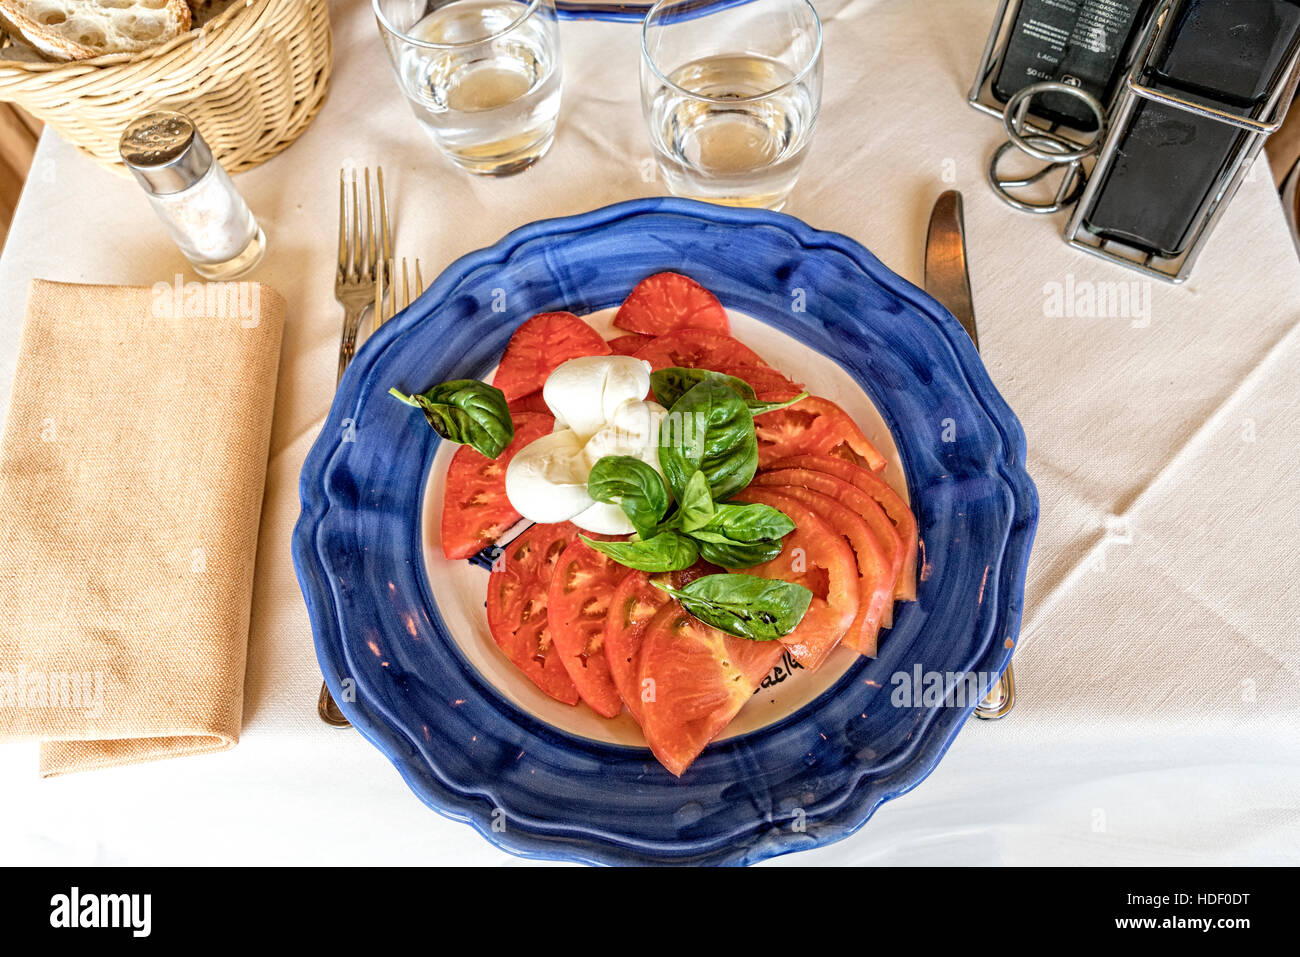 Insalata Caprese (CAPRI) Salade de tomates, mozzarella et basilic. Servi sur une plaque en céramique bleu et blanc. Banque D'Images